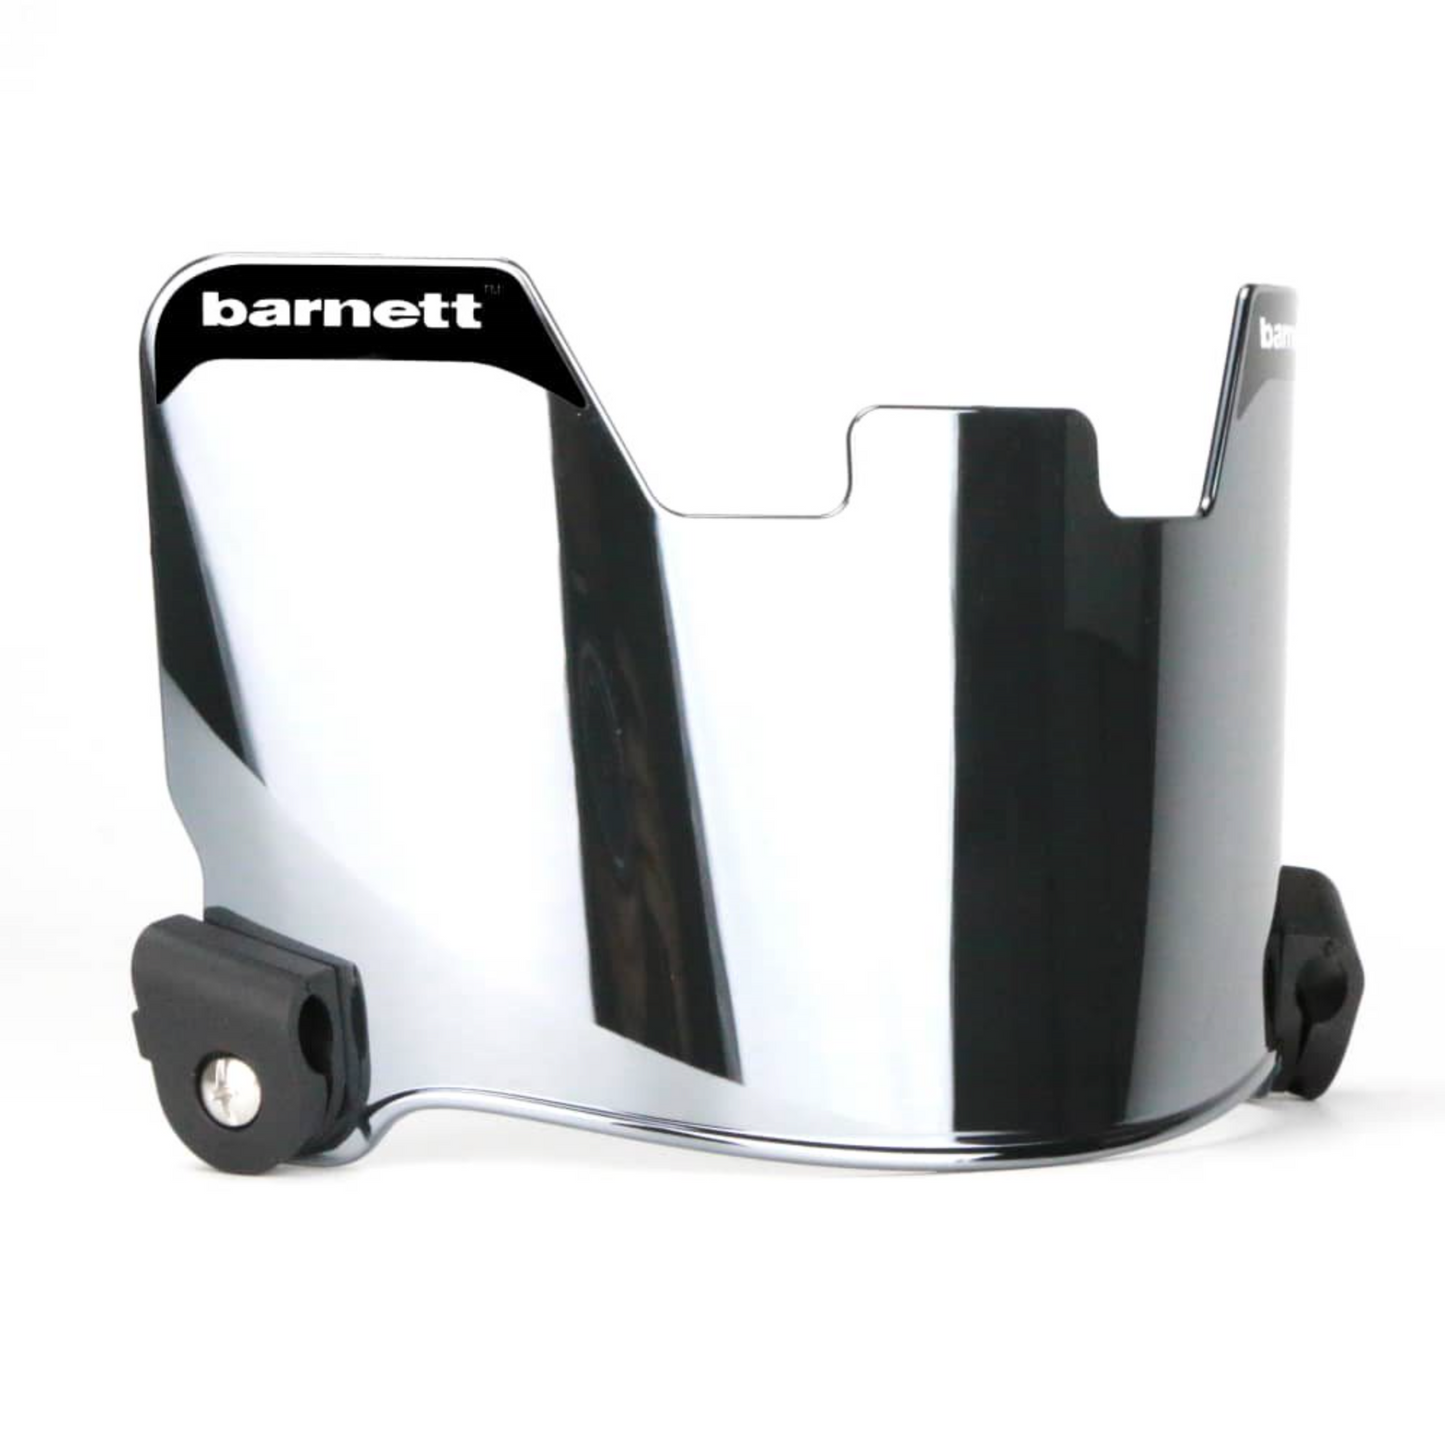 Barnett Football Eyeshield / Visor, Protección Ocular, Chrome